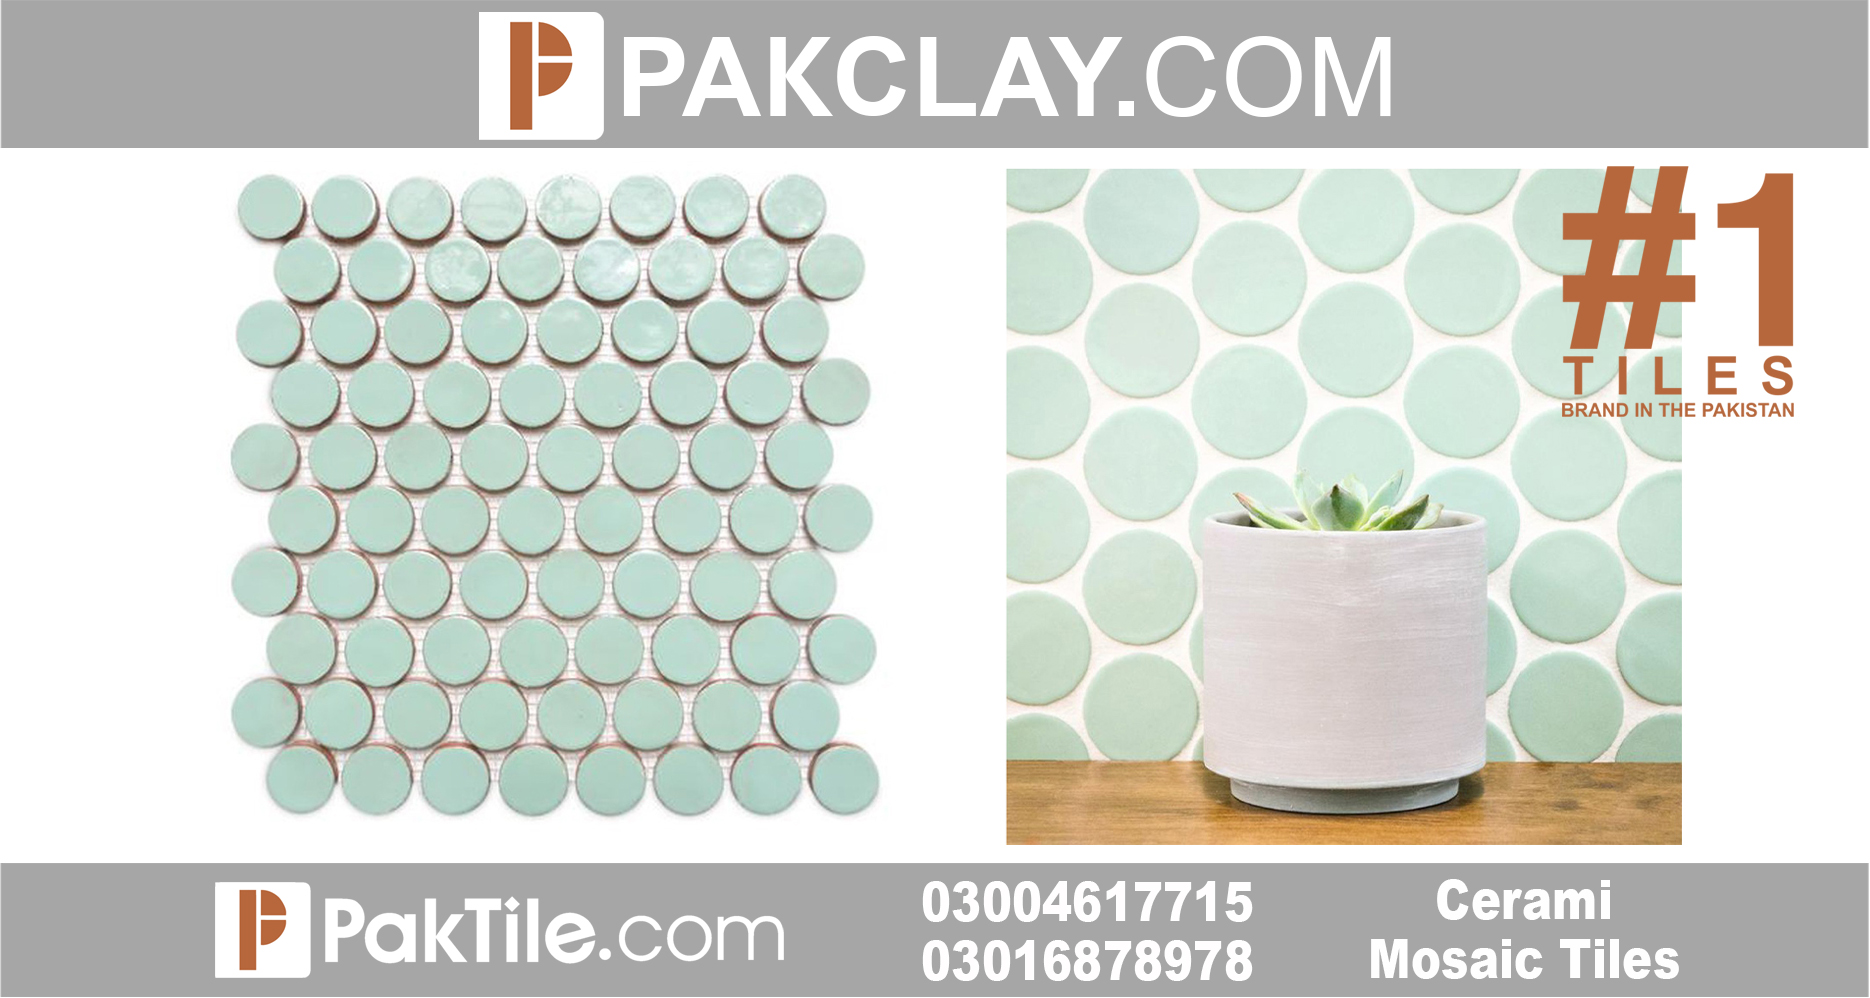 Ceramic Mosaic Tiles Design Lahore